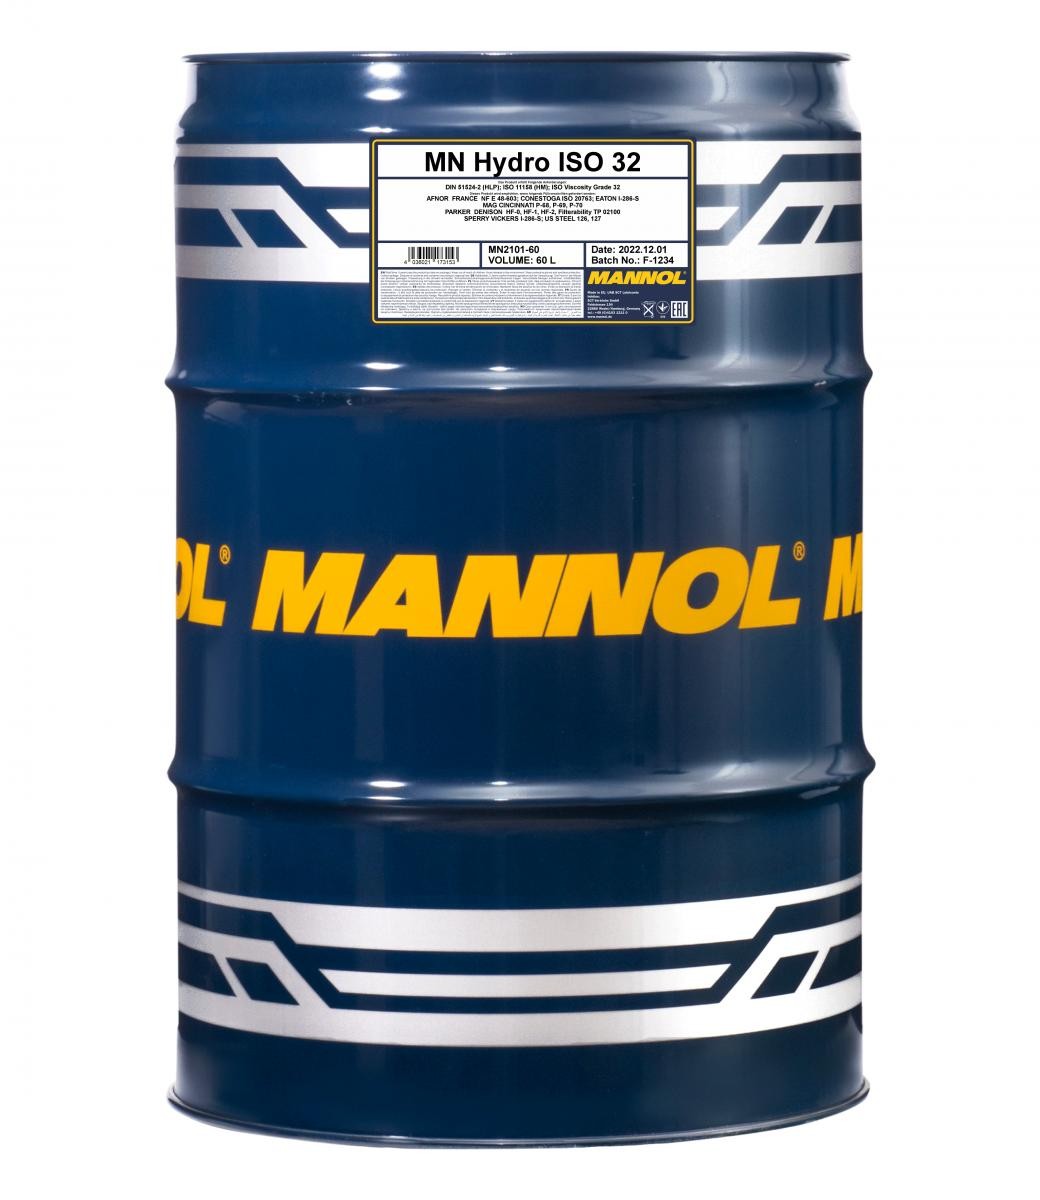 MANNOL Hydro ISO 32 MN2101-60 Central Hydraulic Oil